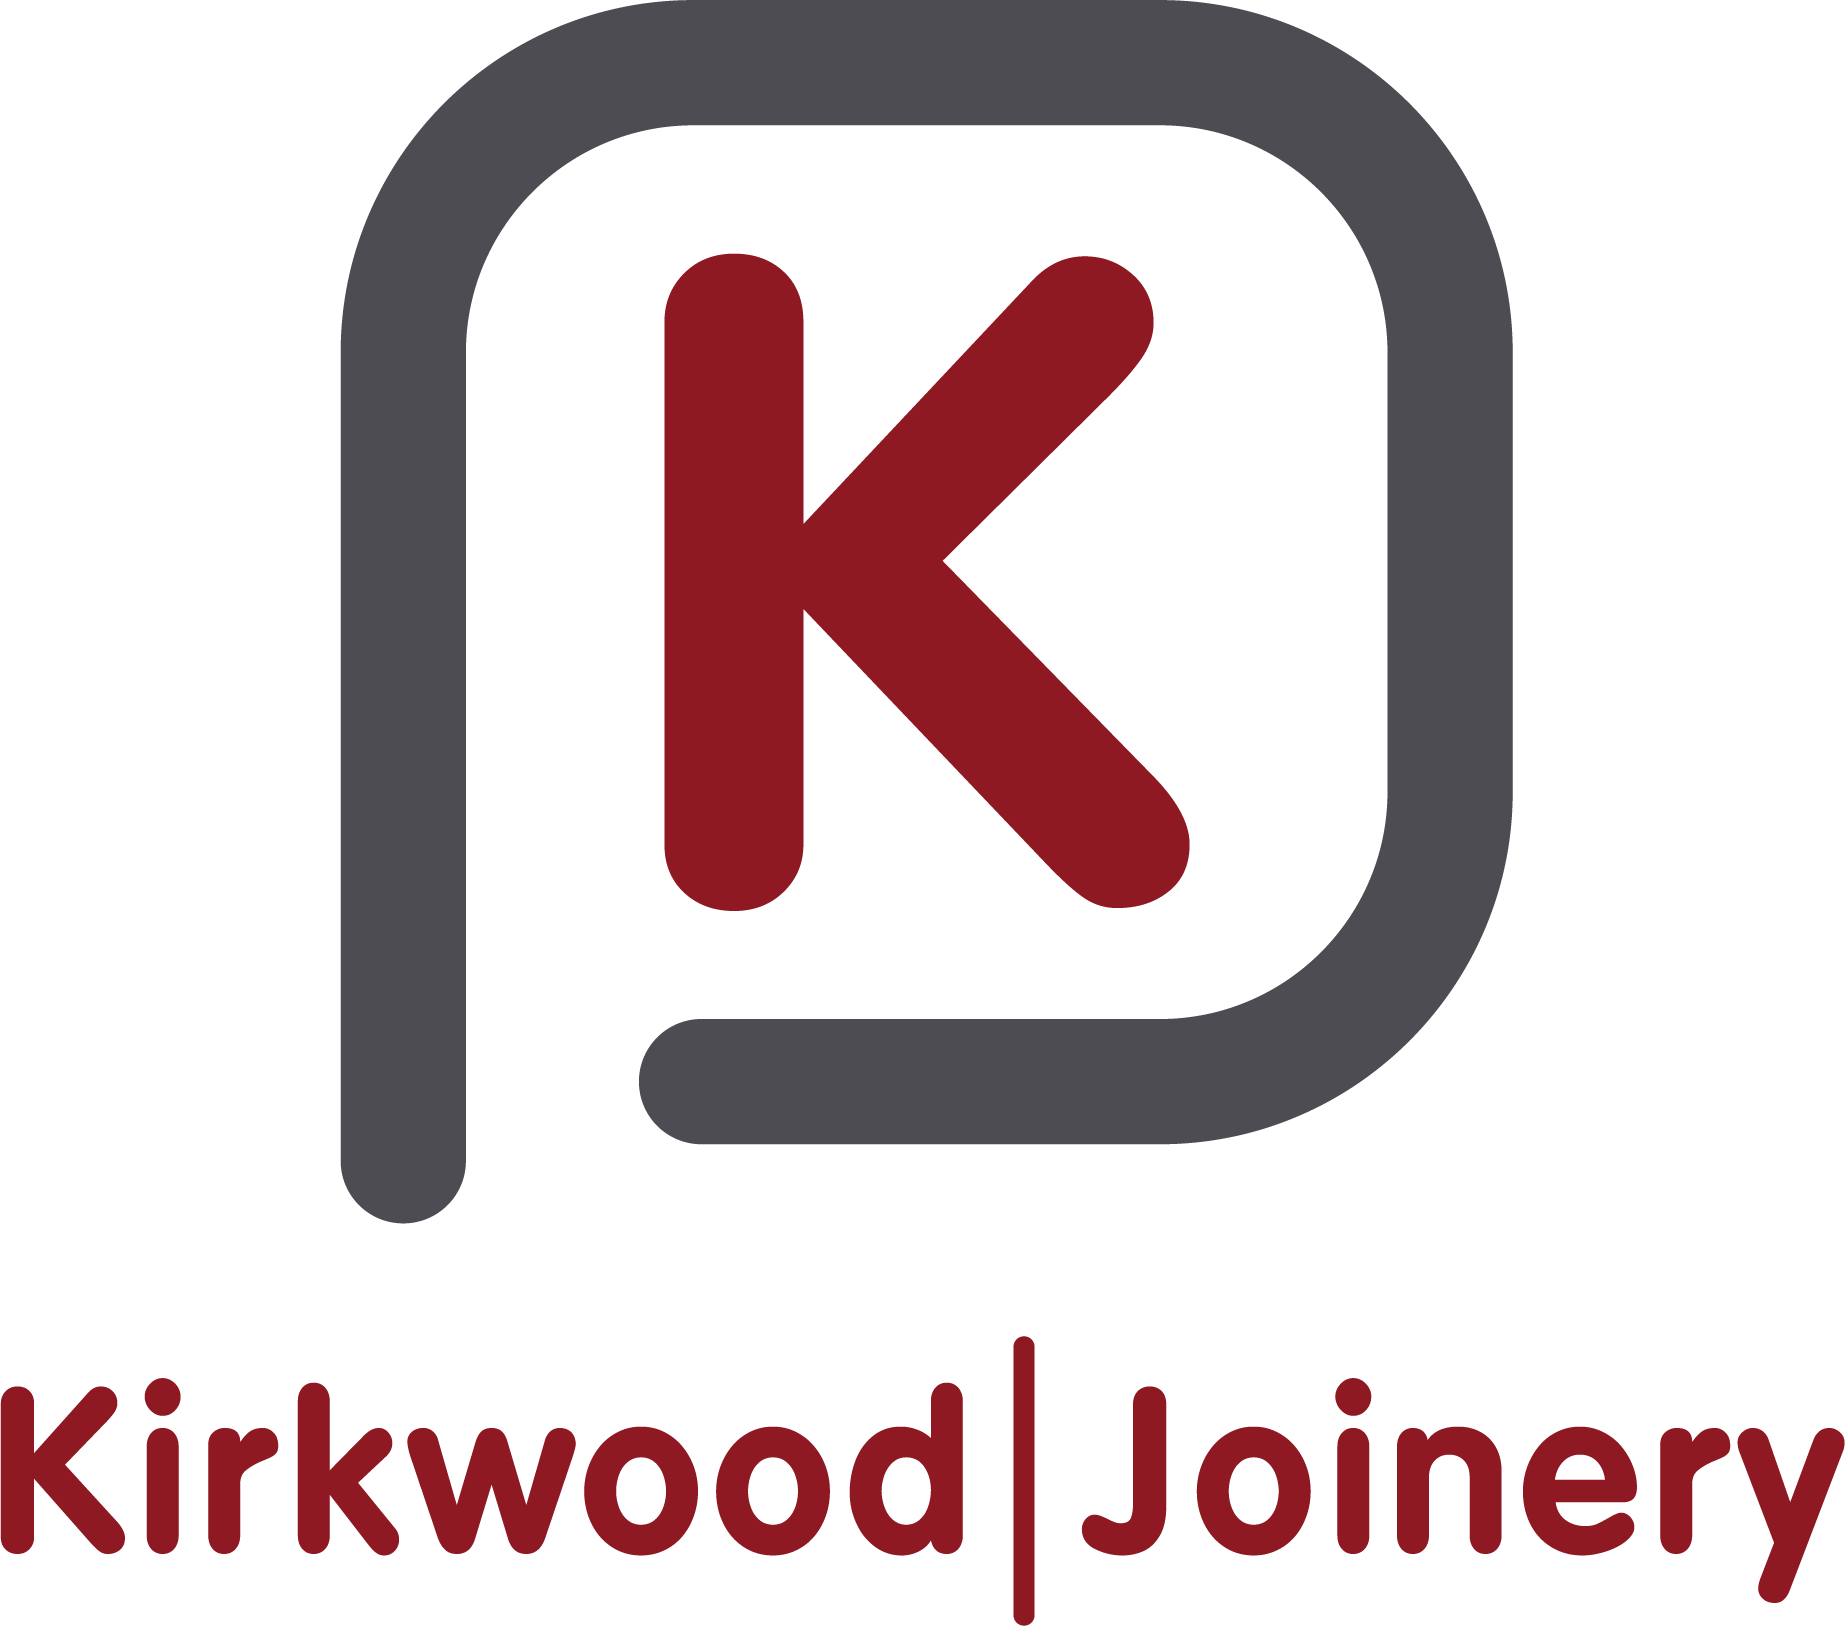 Kirkwood Joinery